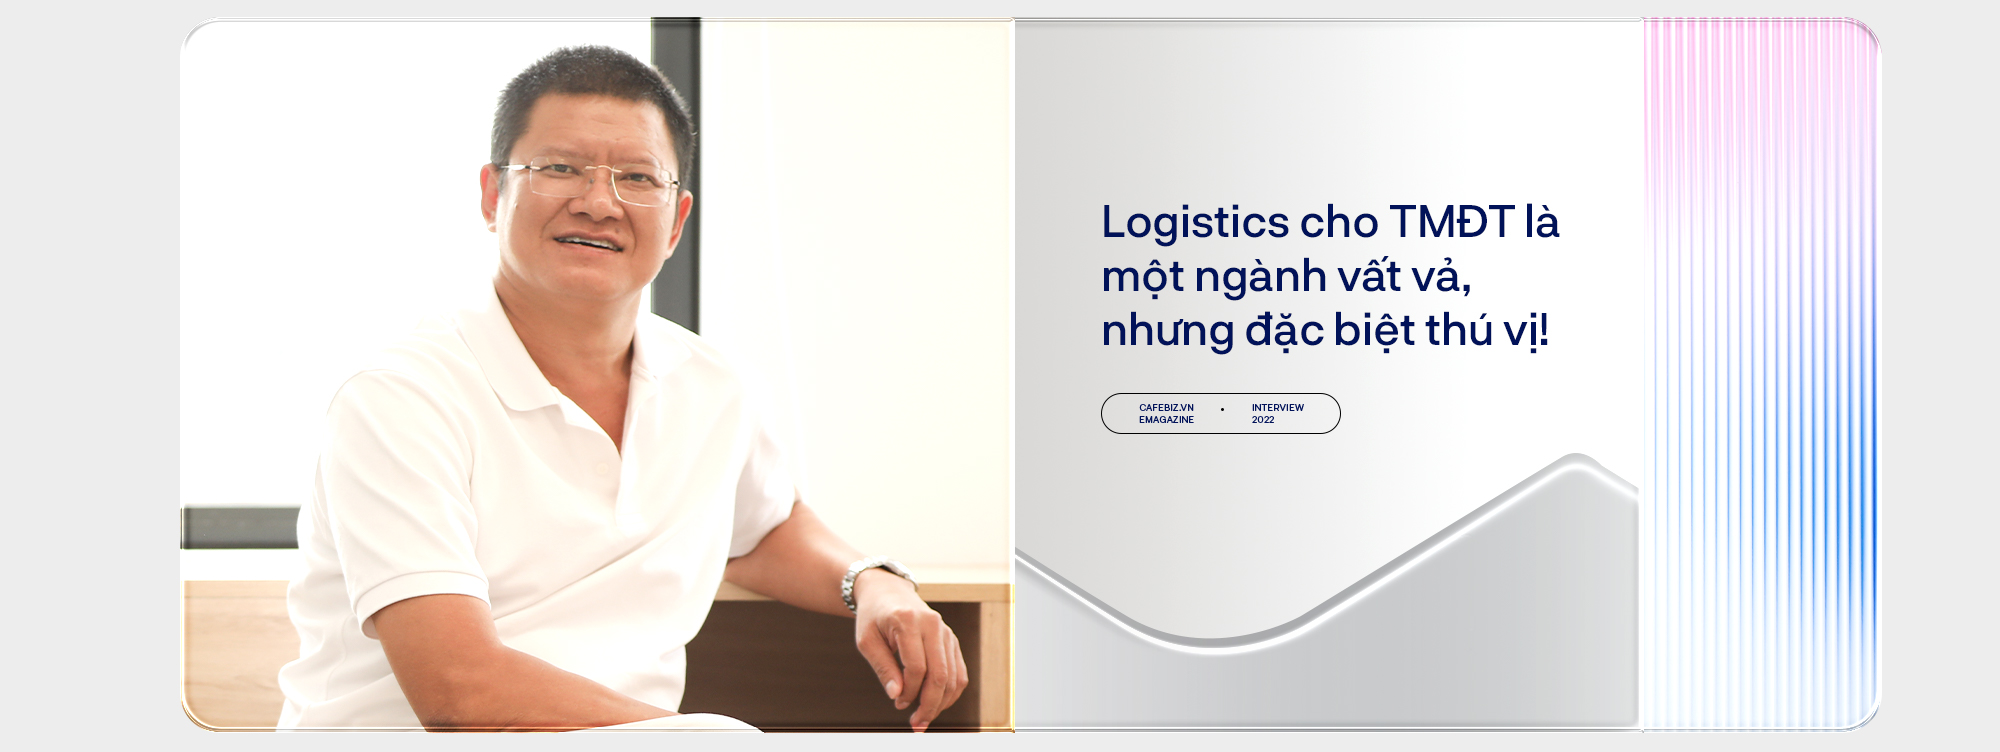 “Người vận chuyển” Vũ Đức Thịnh và giấc mơ dẫn đầu ngành giao vận thương mại điện tử với Lazada Logistics Việt Nam  - Ảnh 4.